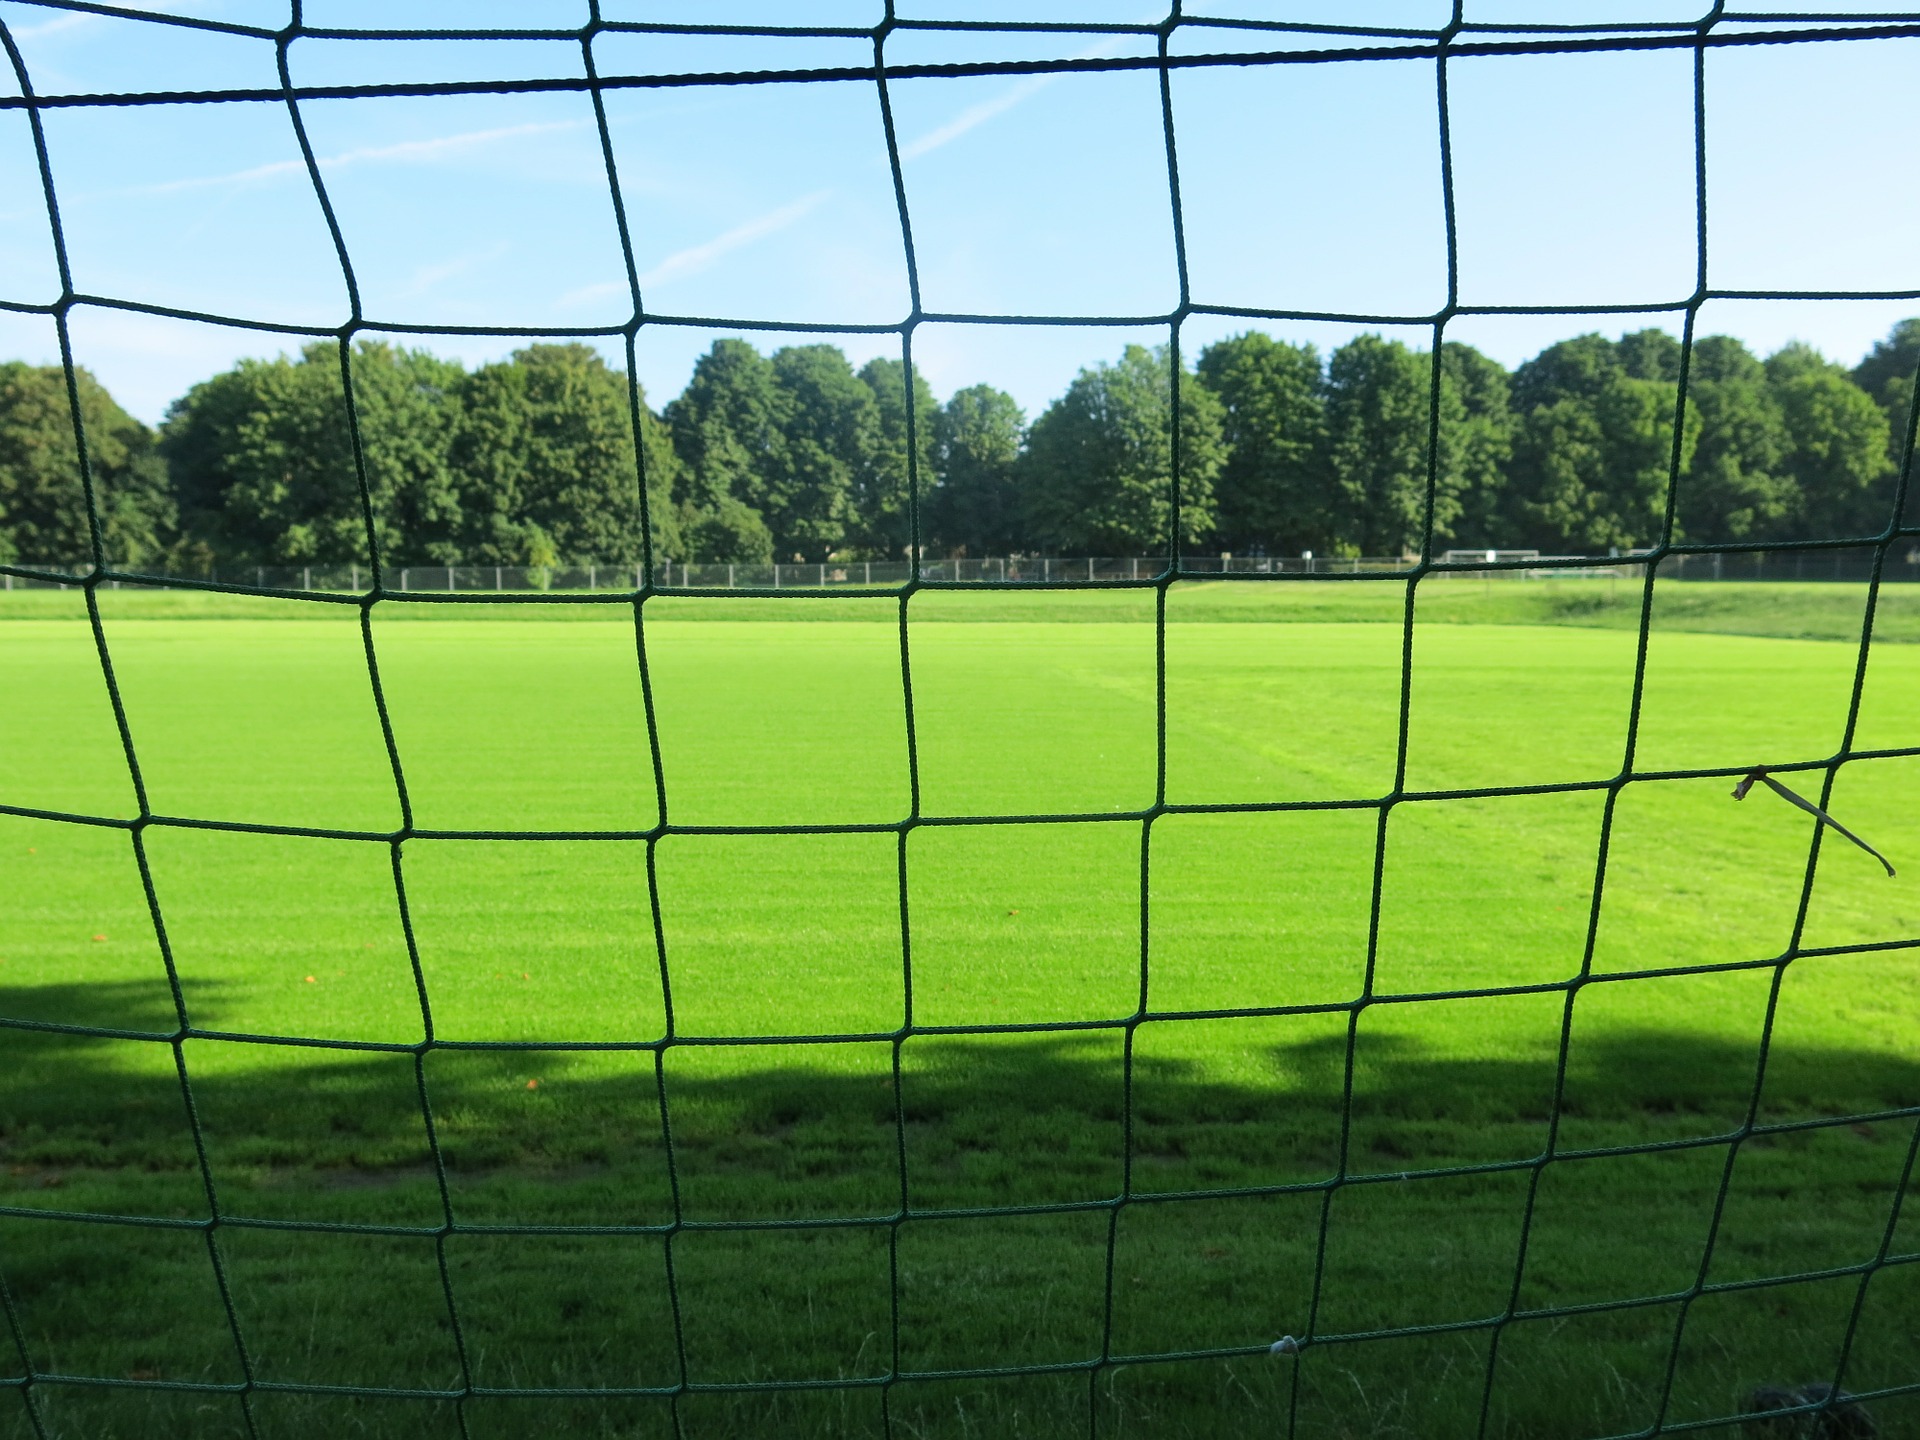 Nogometni travnjak. Izvor: https://pixabay.com/p-467703/?no_redirect